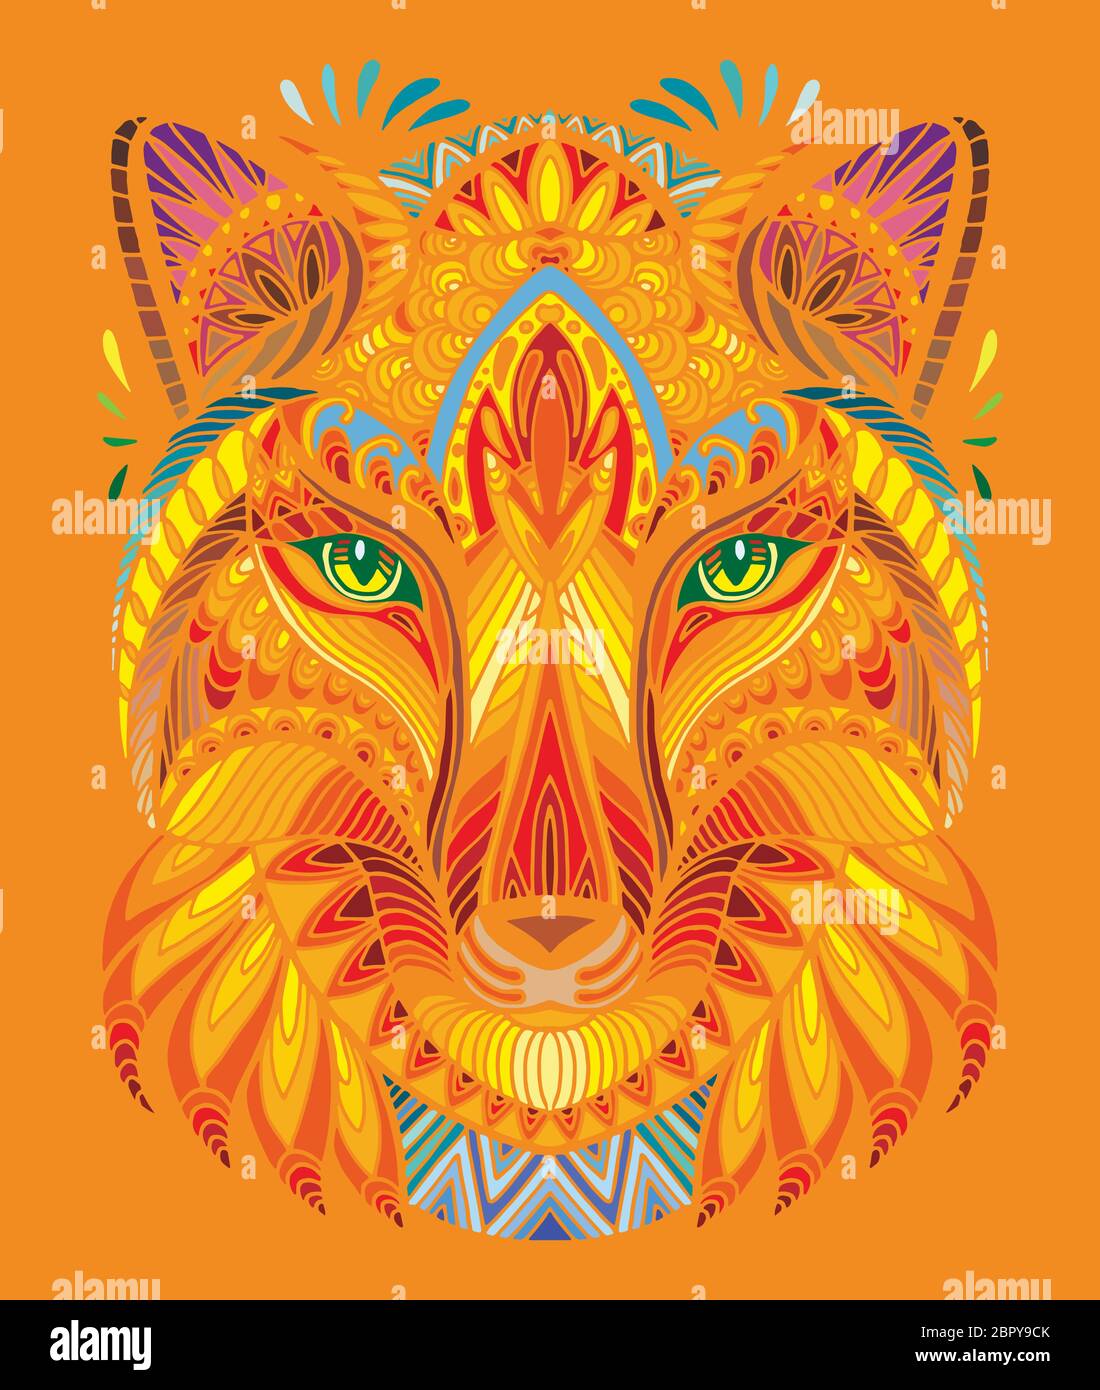 Vettore decorativo doodle testa ornamentale di volpe. Vettore astratto colorato illustrazione della testa di volpe isolato su sfondo arancione. Illustrazione del magazzino f Illustrazione Vettoriale